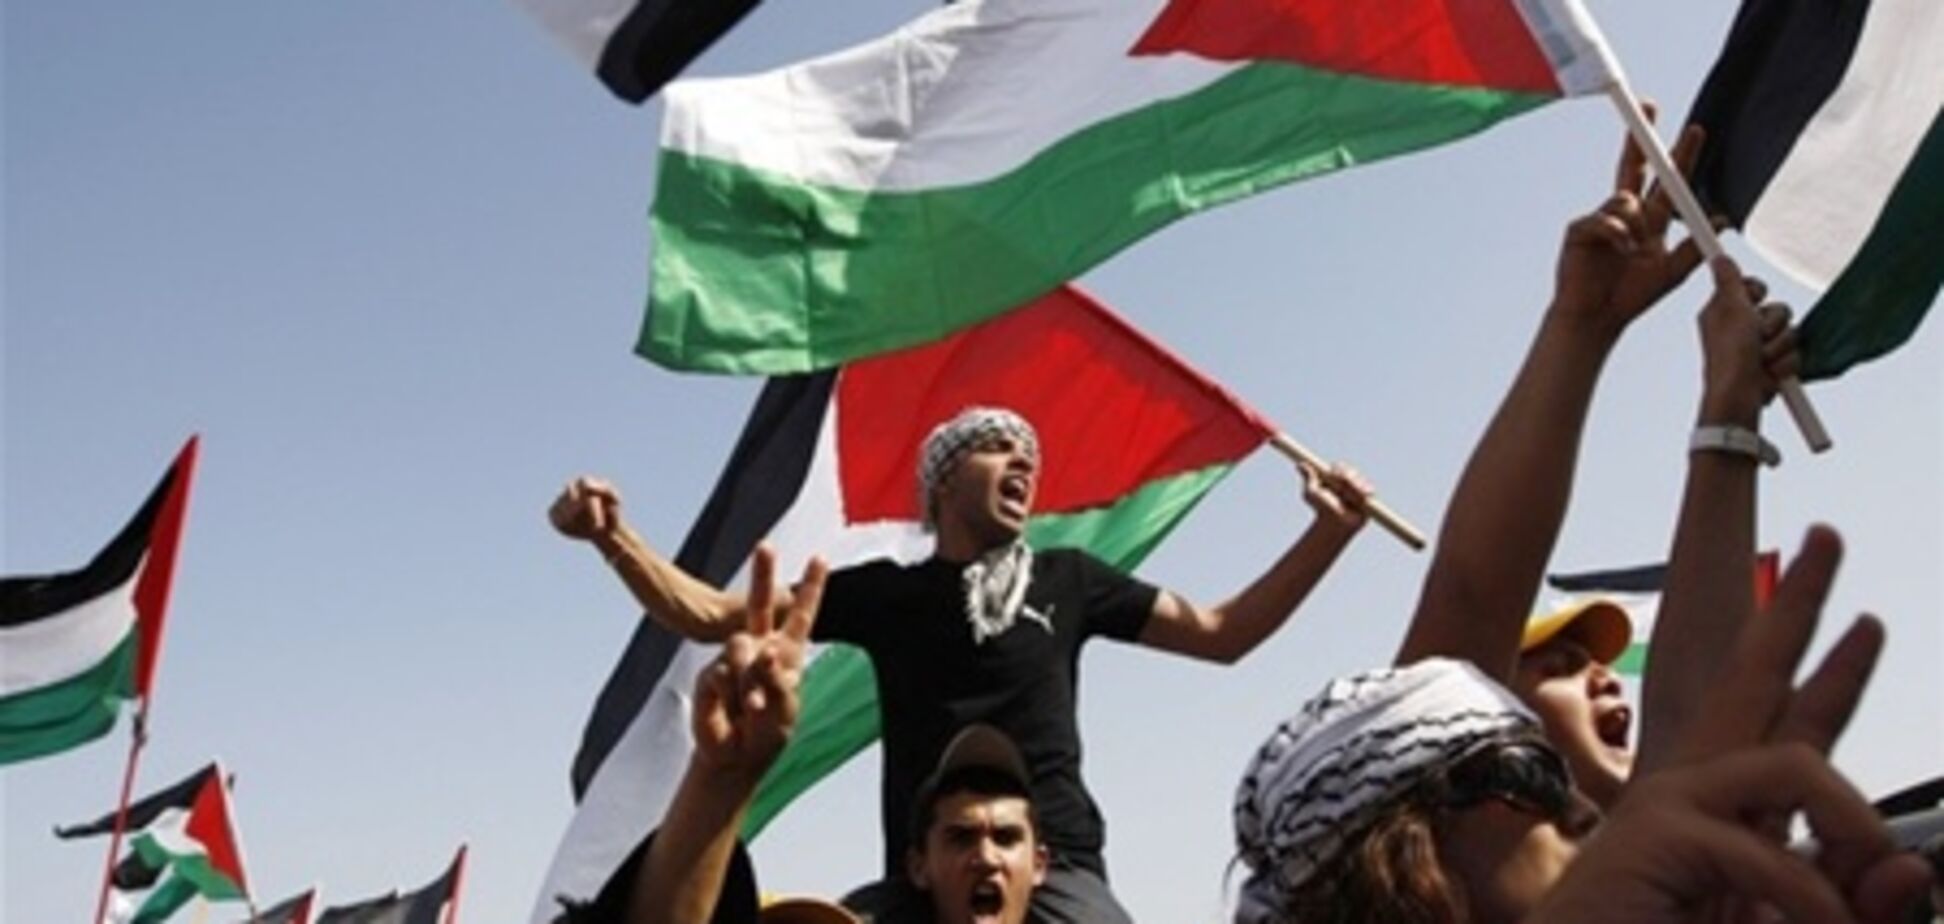 ООН визнала Палестину державою. Відео